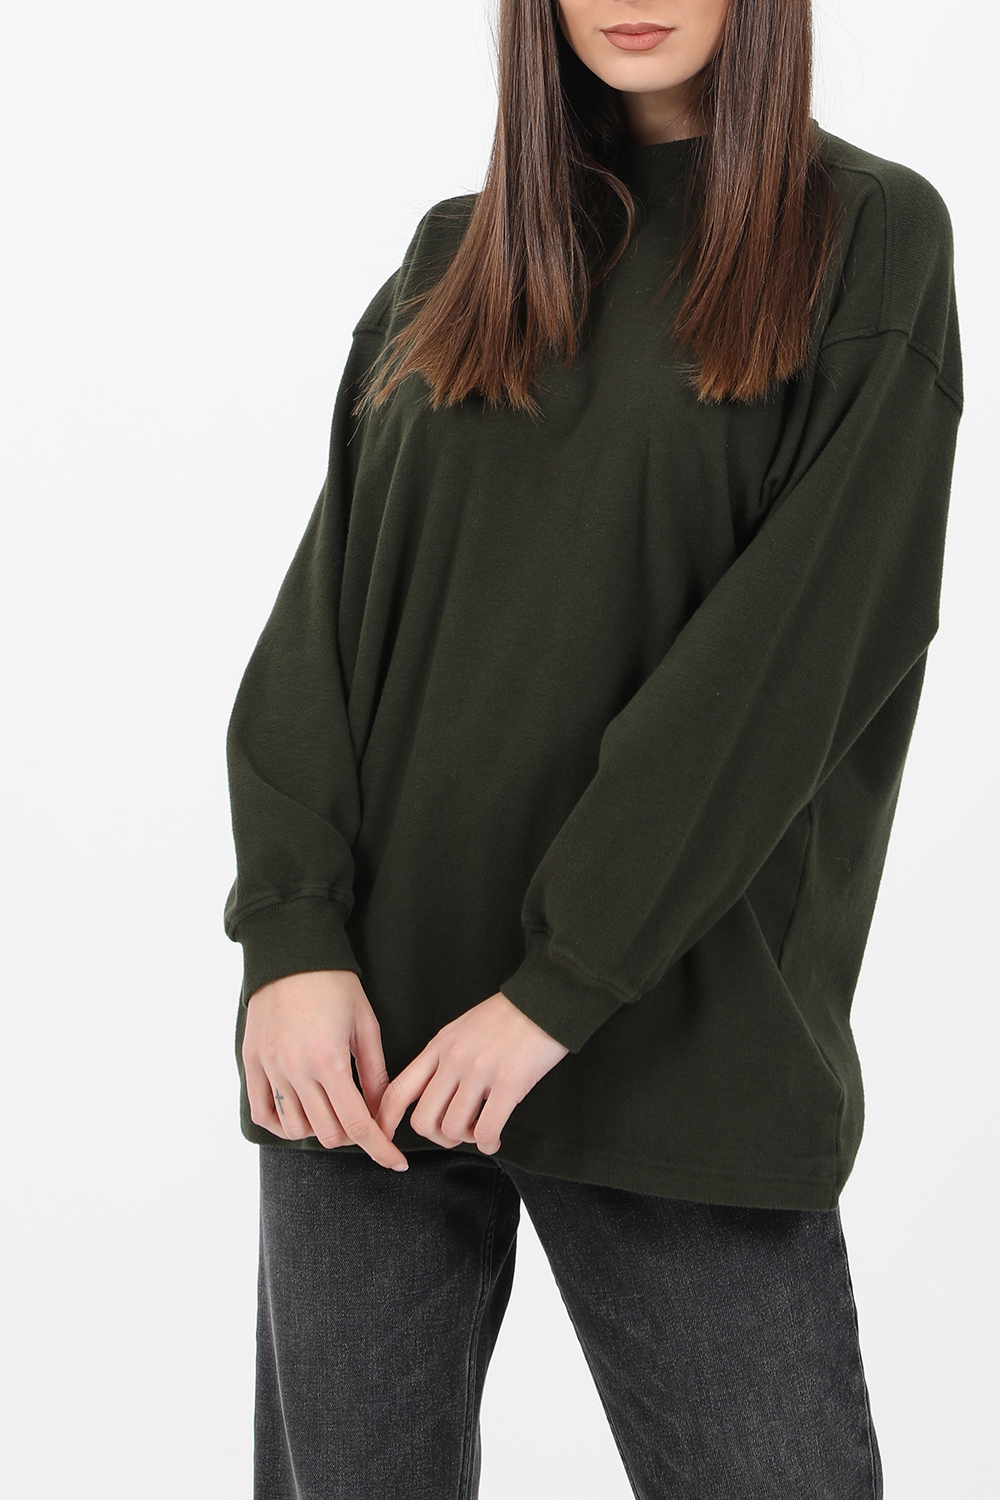 Γυναικεία/Ρούχα/Φούτερ/Μπλούζες AMERICAN VINTAGE - Γυναικεία φούτερ μπλούζα AMERICAN VINTAGE πράσινη